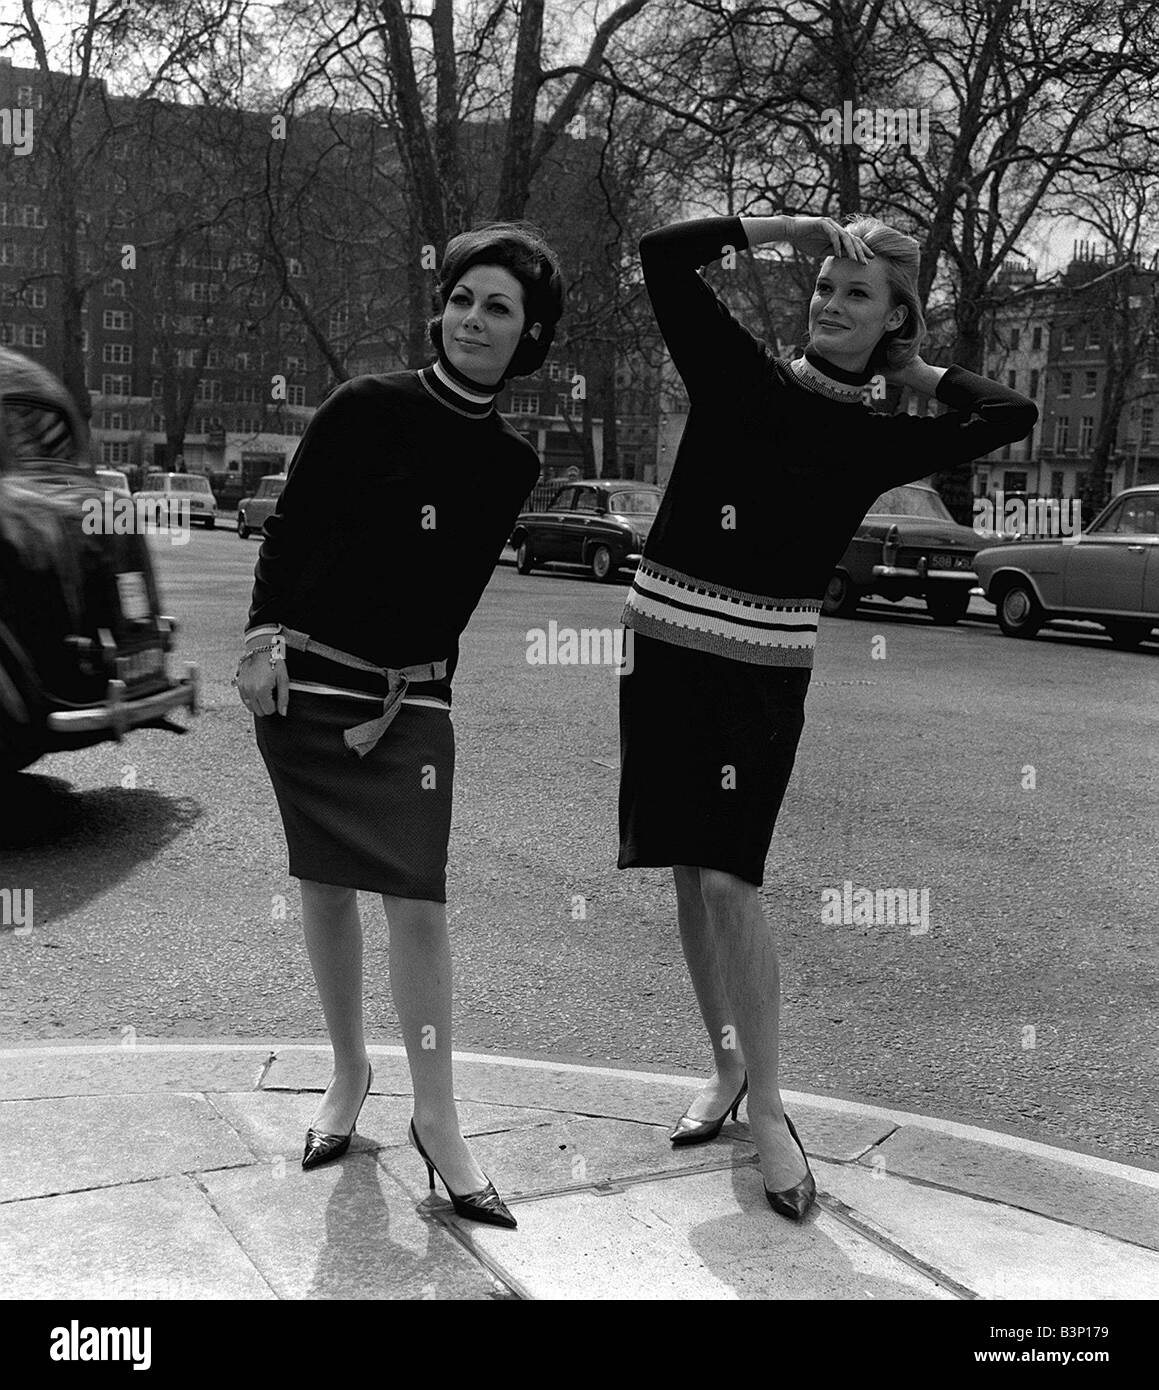 Pulls Fashion par Remploy 1964 Deux modèles féminins portant des robes similaires standing in street se présentant comme si à la recherche de quelqu'un Banque D'Images